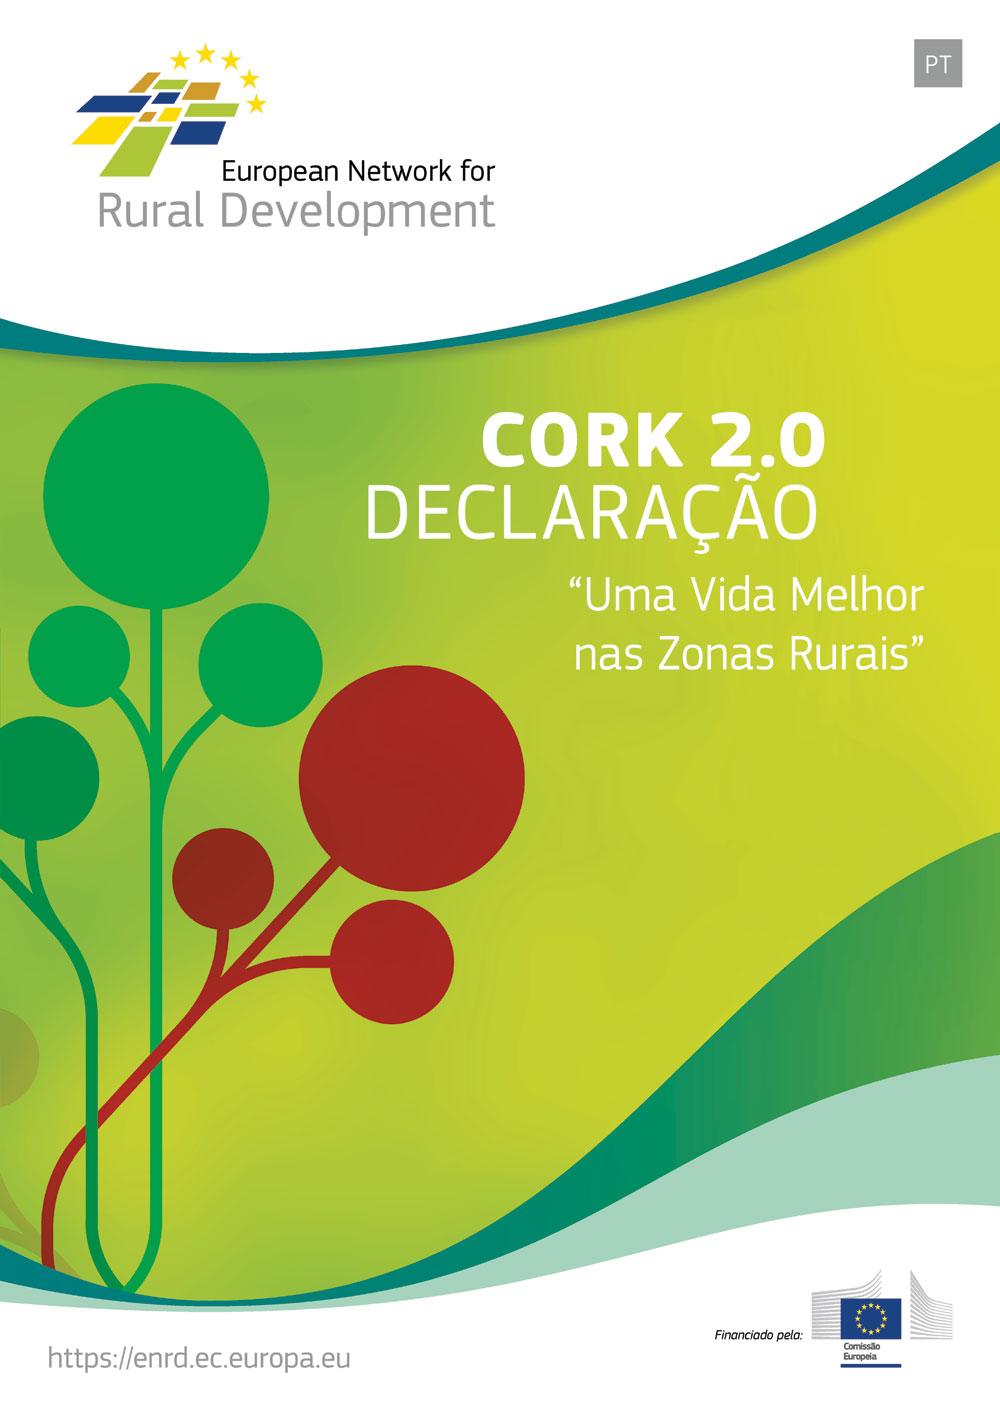 Declaração CORK 2.0 - "Uma Vida Melhor nas Zonas Rurais"